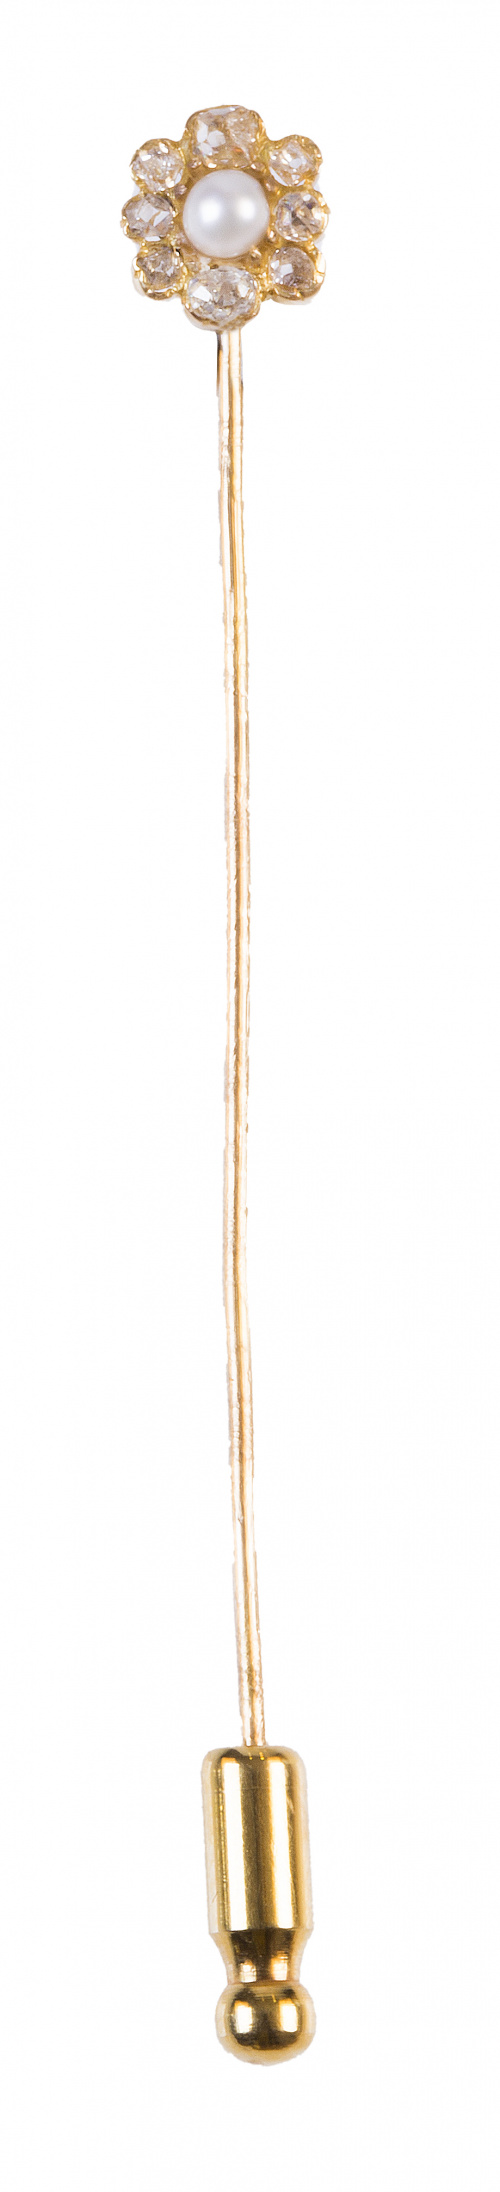 Alfiler de corbata años 30 en forma de flor con perla centr